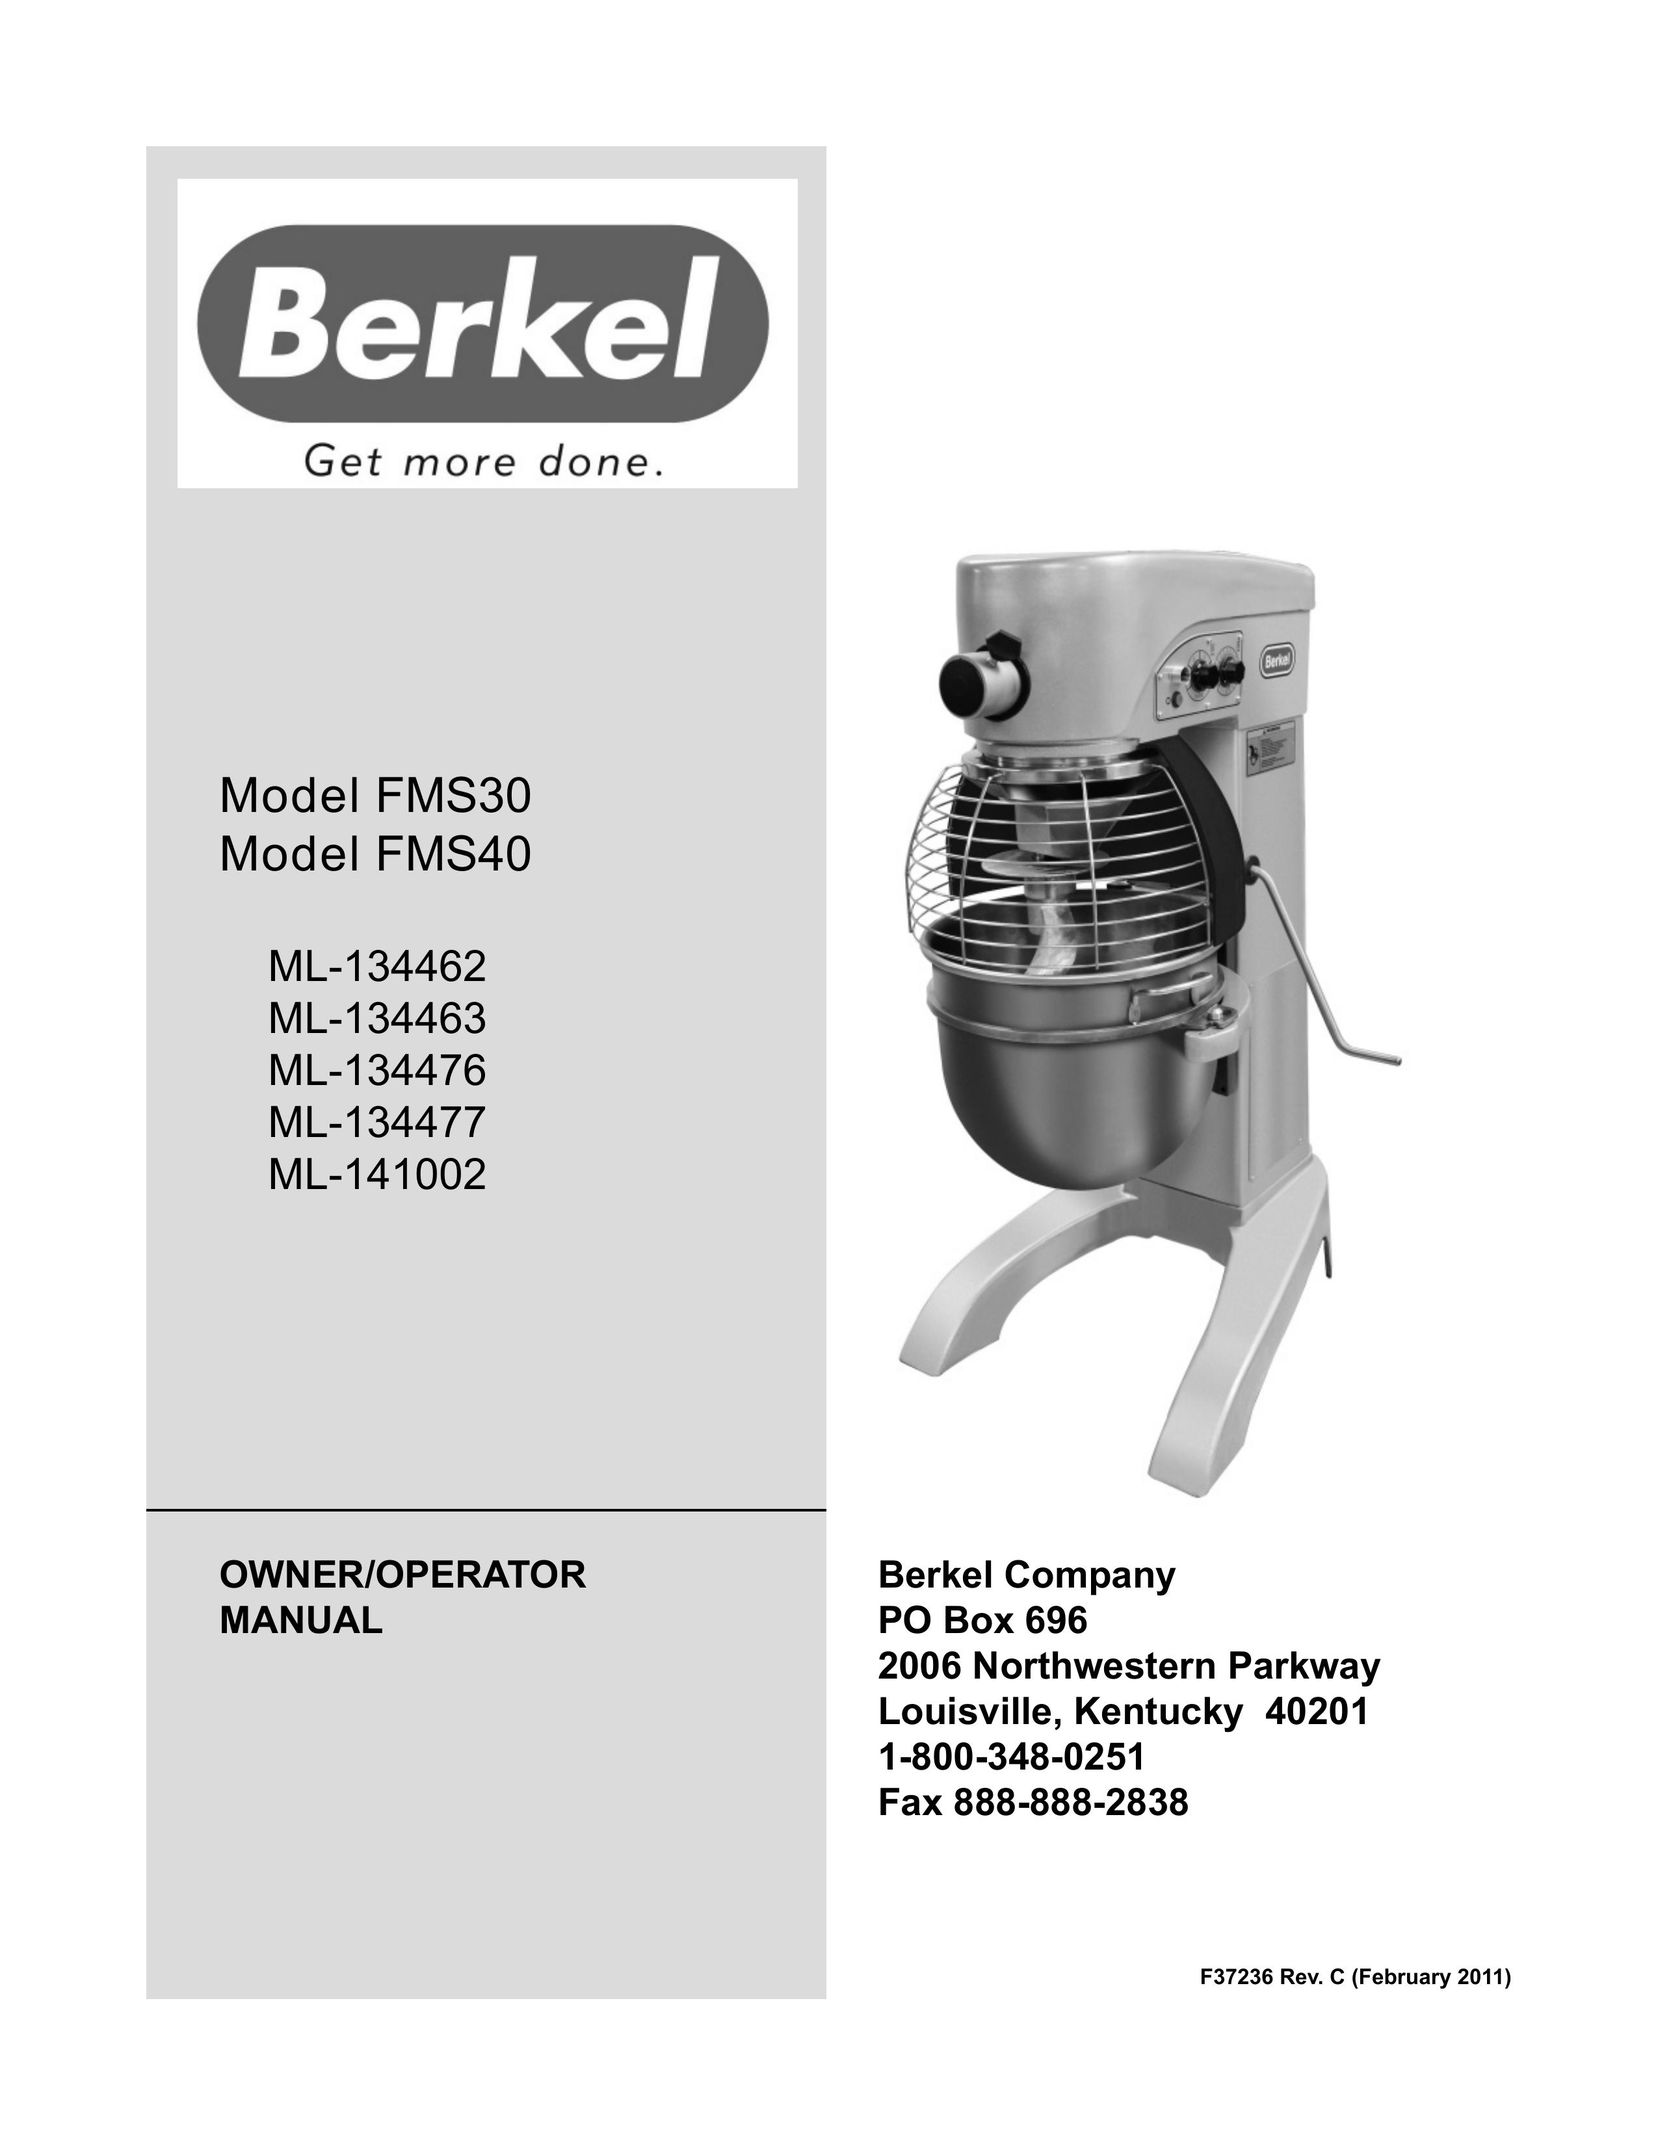 Berkel FMS40 Mixer User Manual